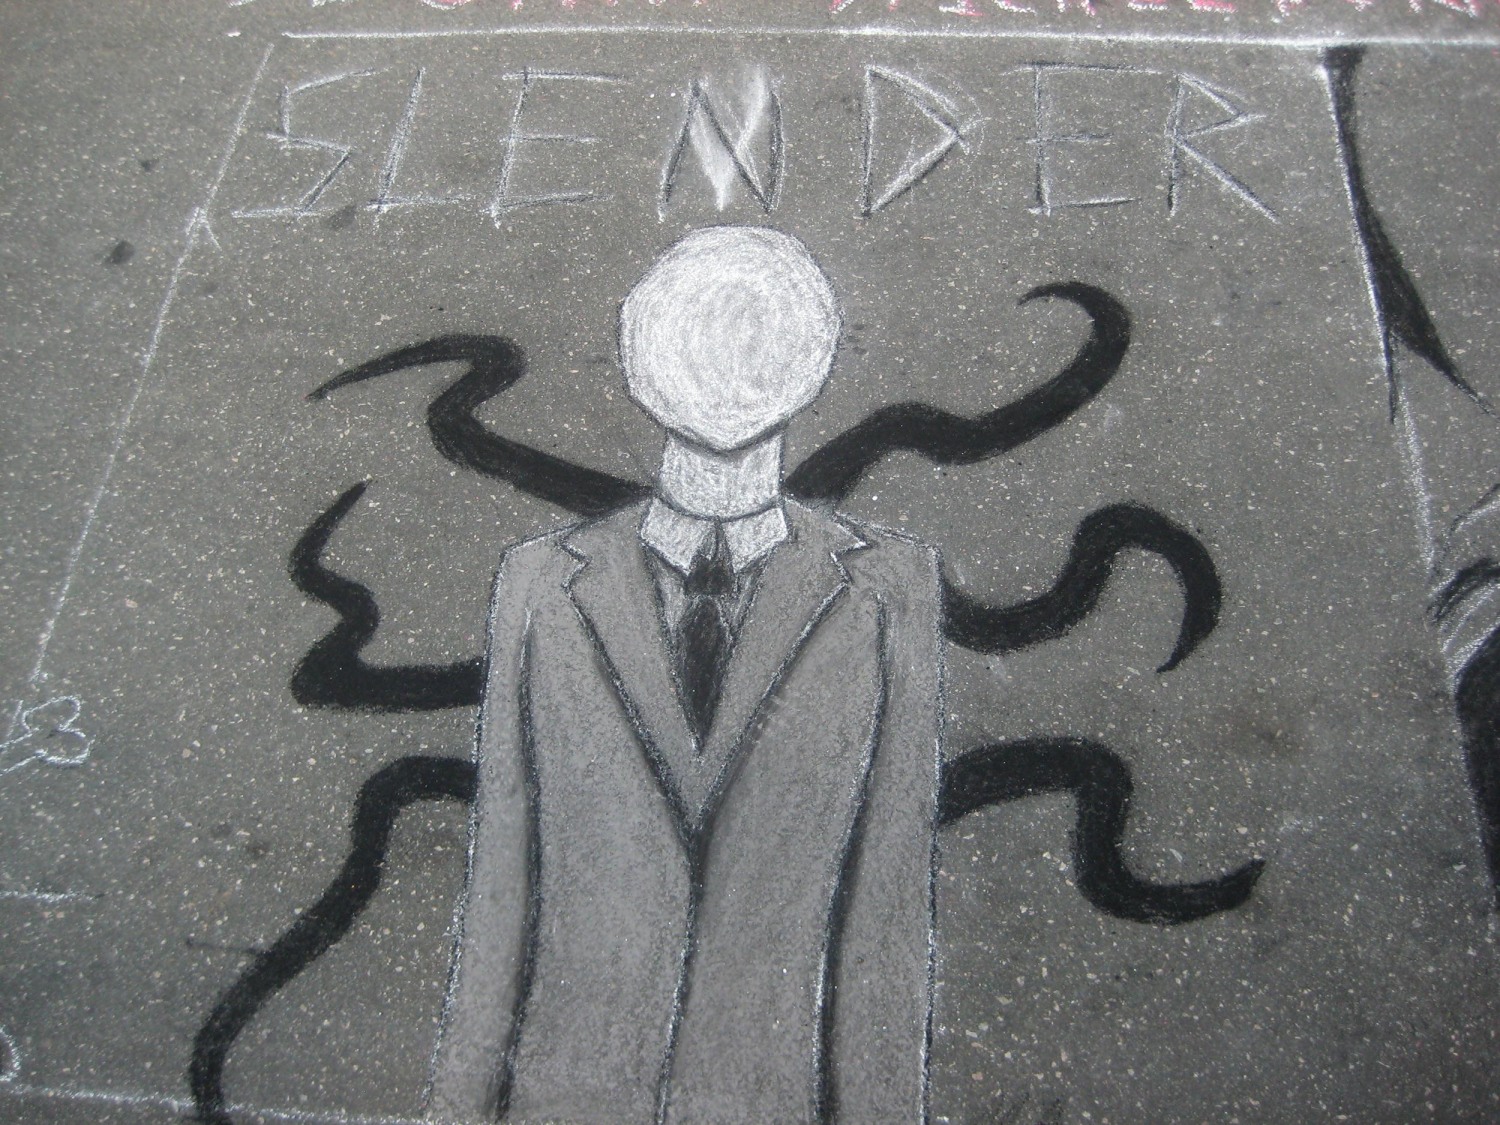 jeff the killer slender man gif